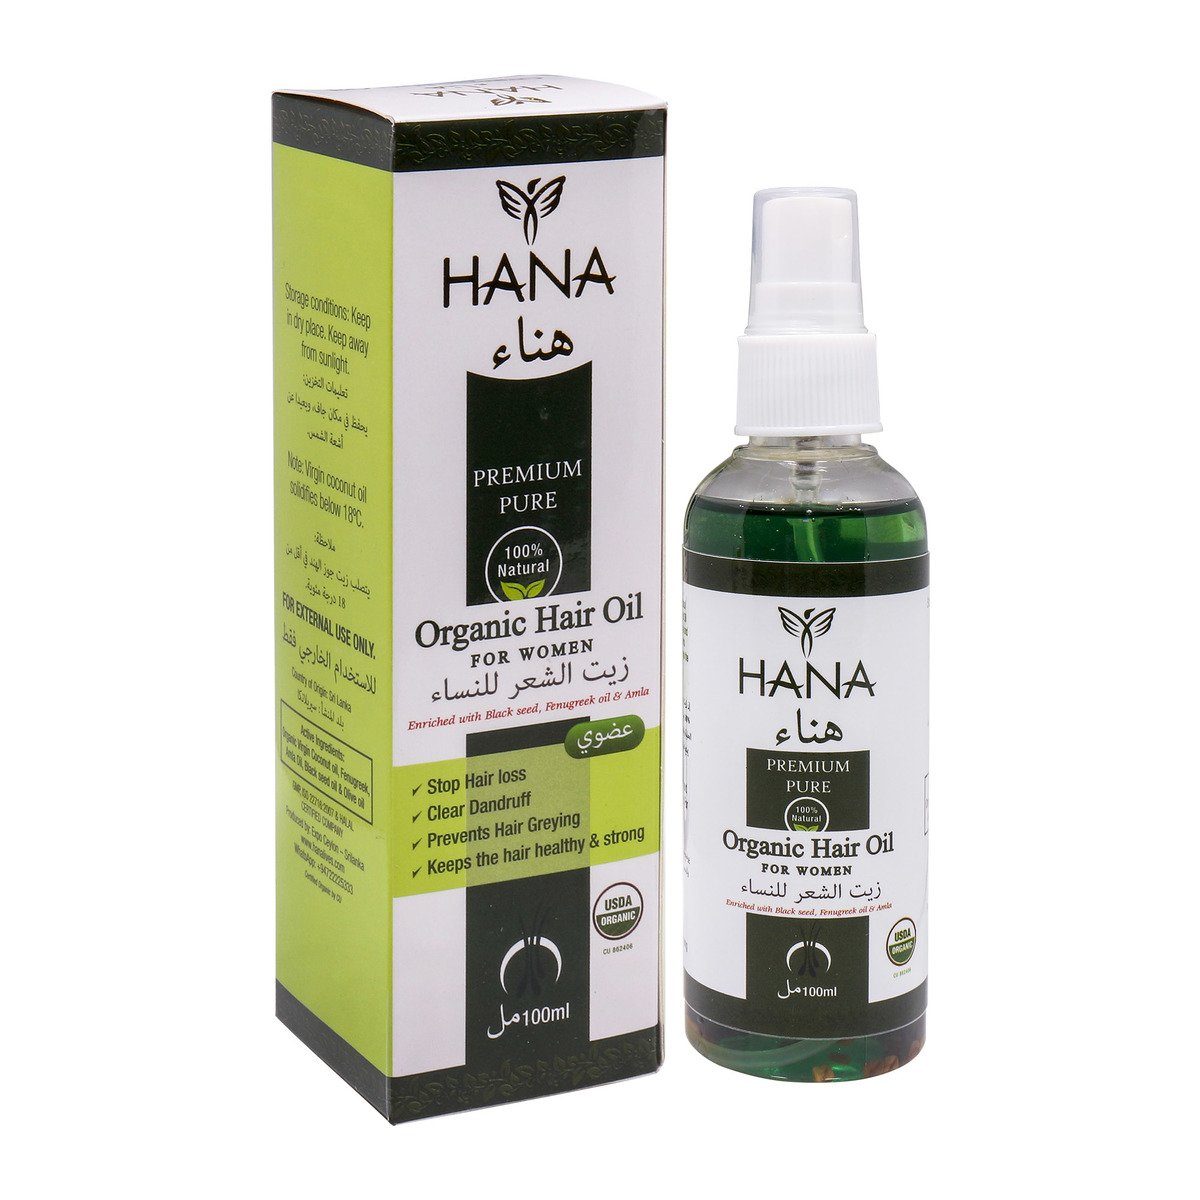 Hana Organic Hair Oil for Women 100ml